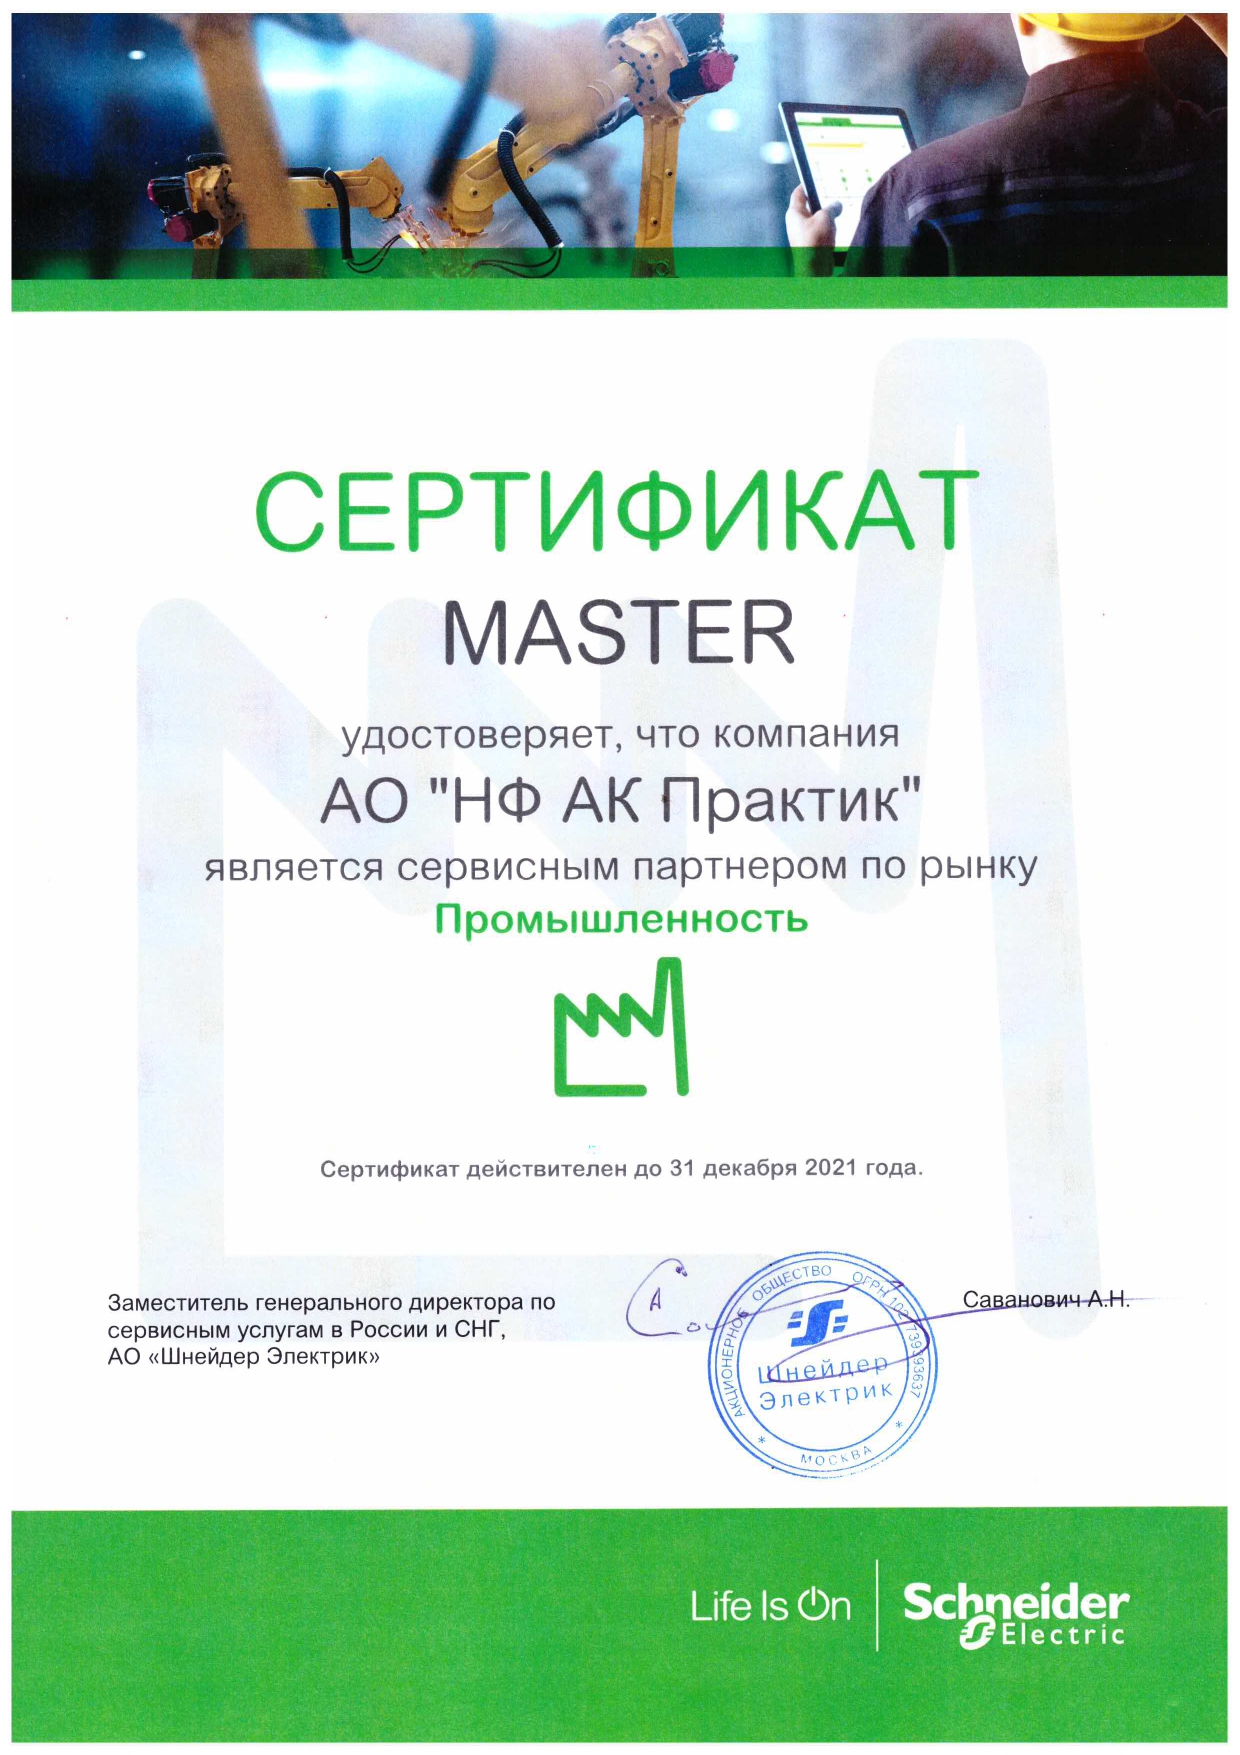 Сертификат_Сервисного партнера Schneider Electric